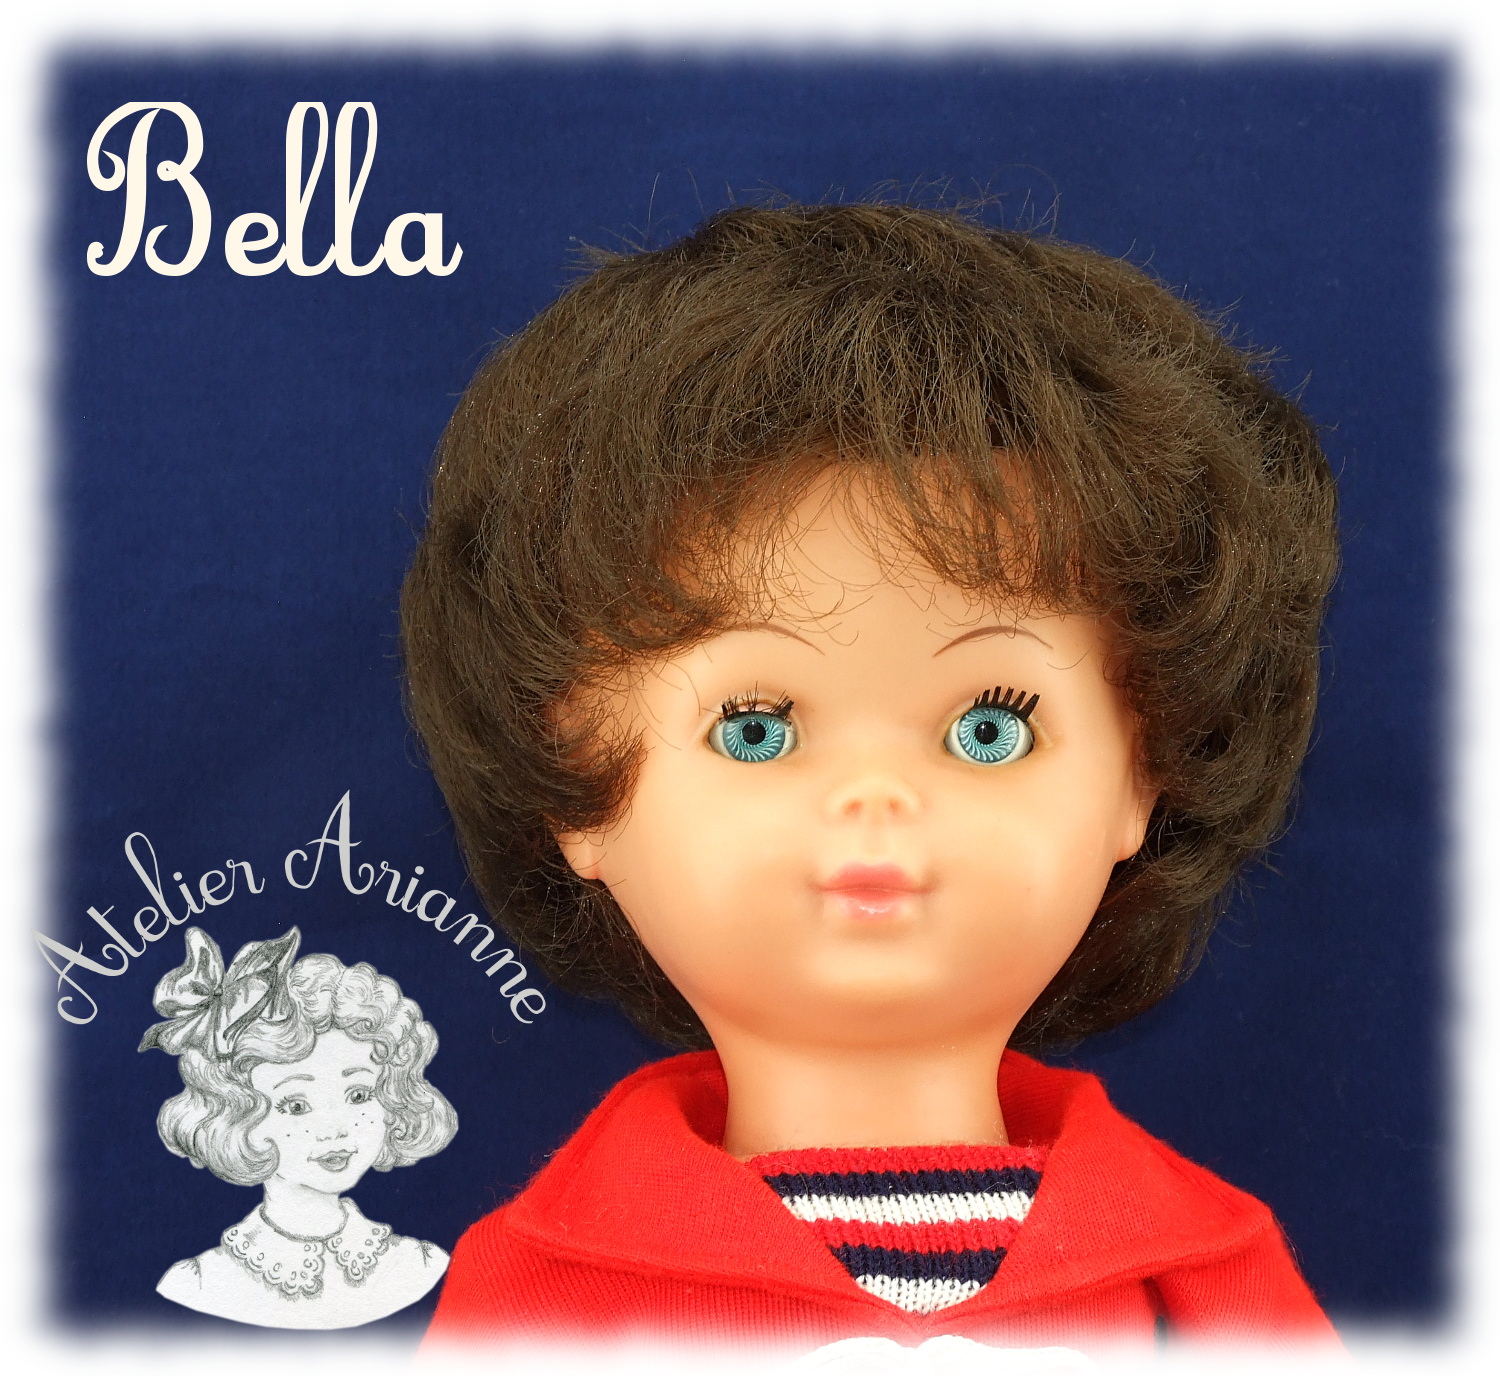 BELLA - Poupée Bella - 1960-1969 - France  Belles poupées, Poupée, Poupées  anciennes